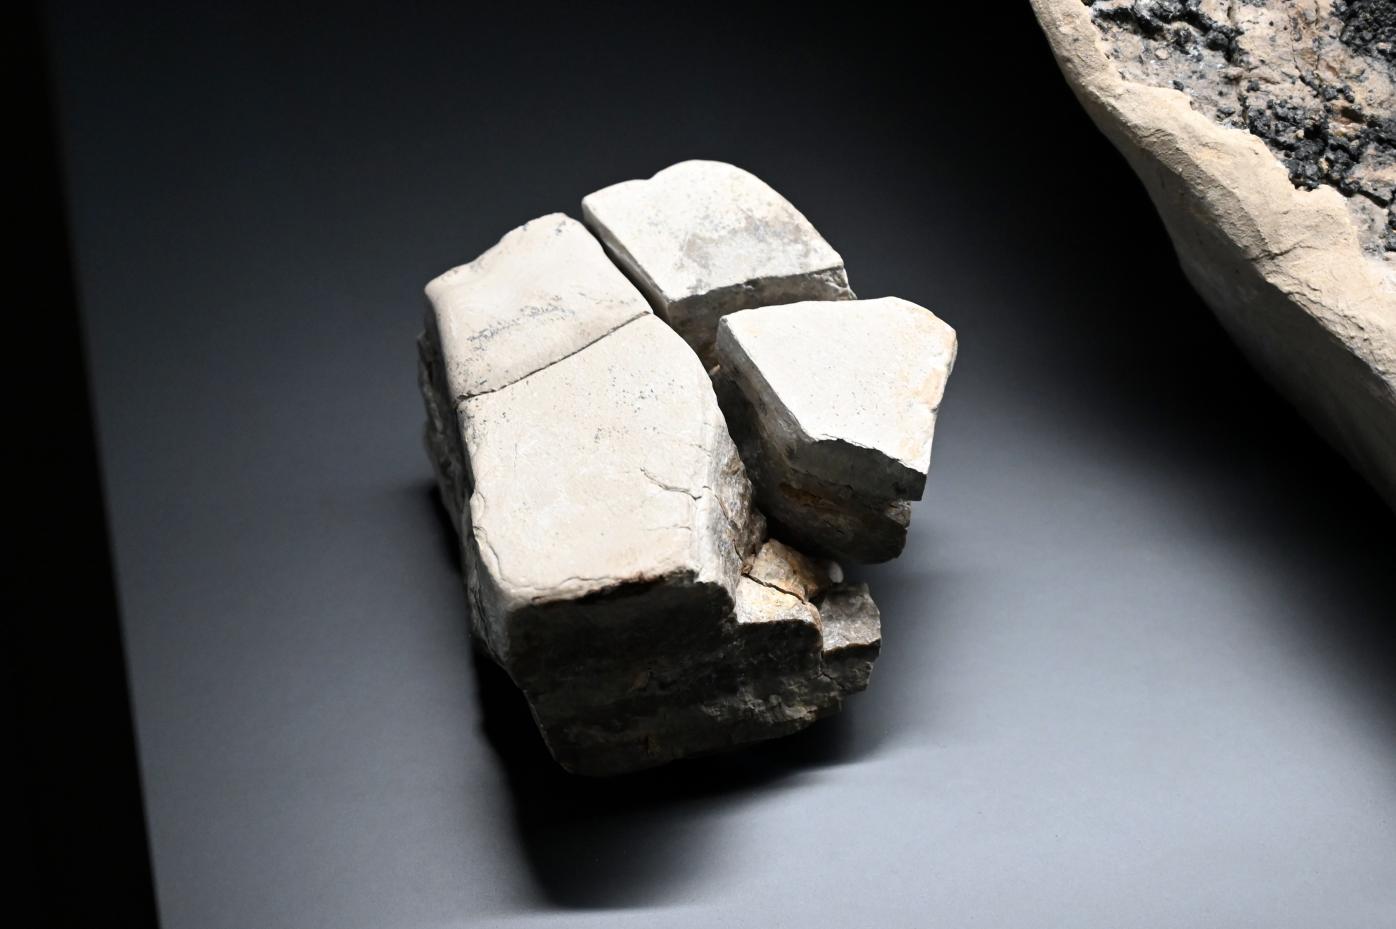 Muschelkalkblock, Reinsdorf-Warmzeit, 370000 v. Chr., 370000 v. Chr., Bild 1/2